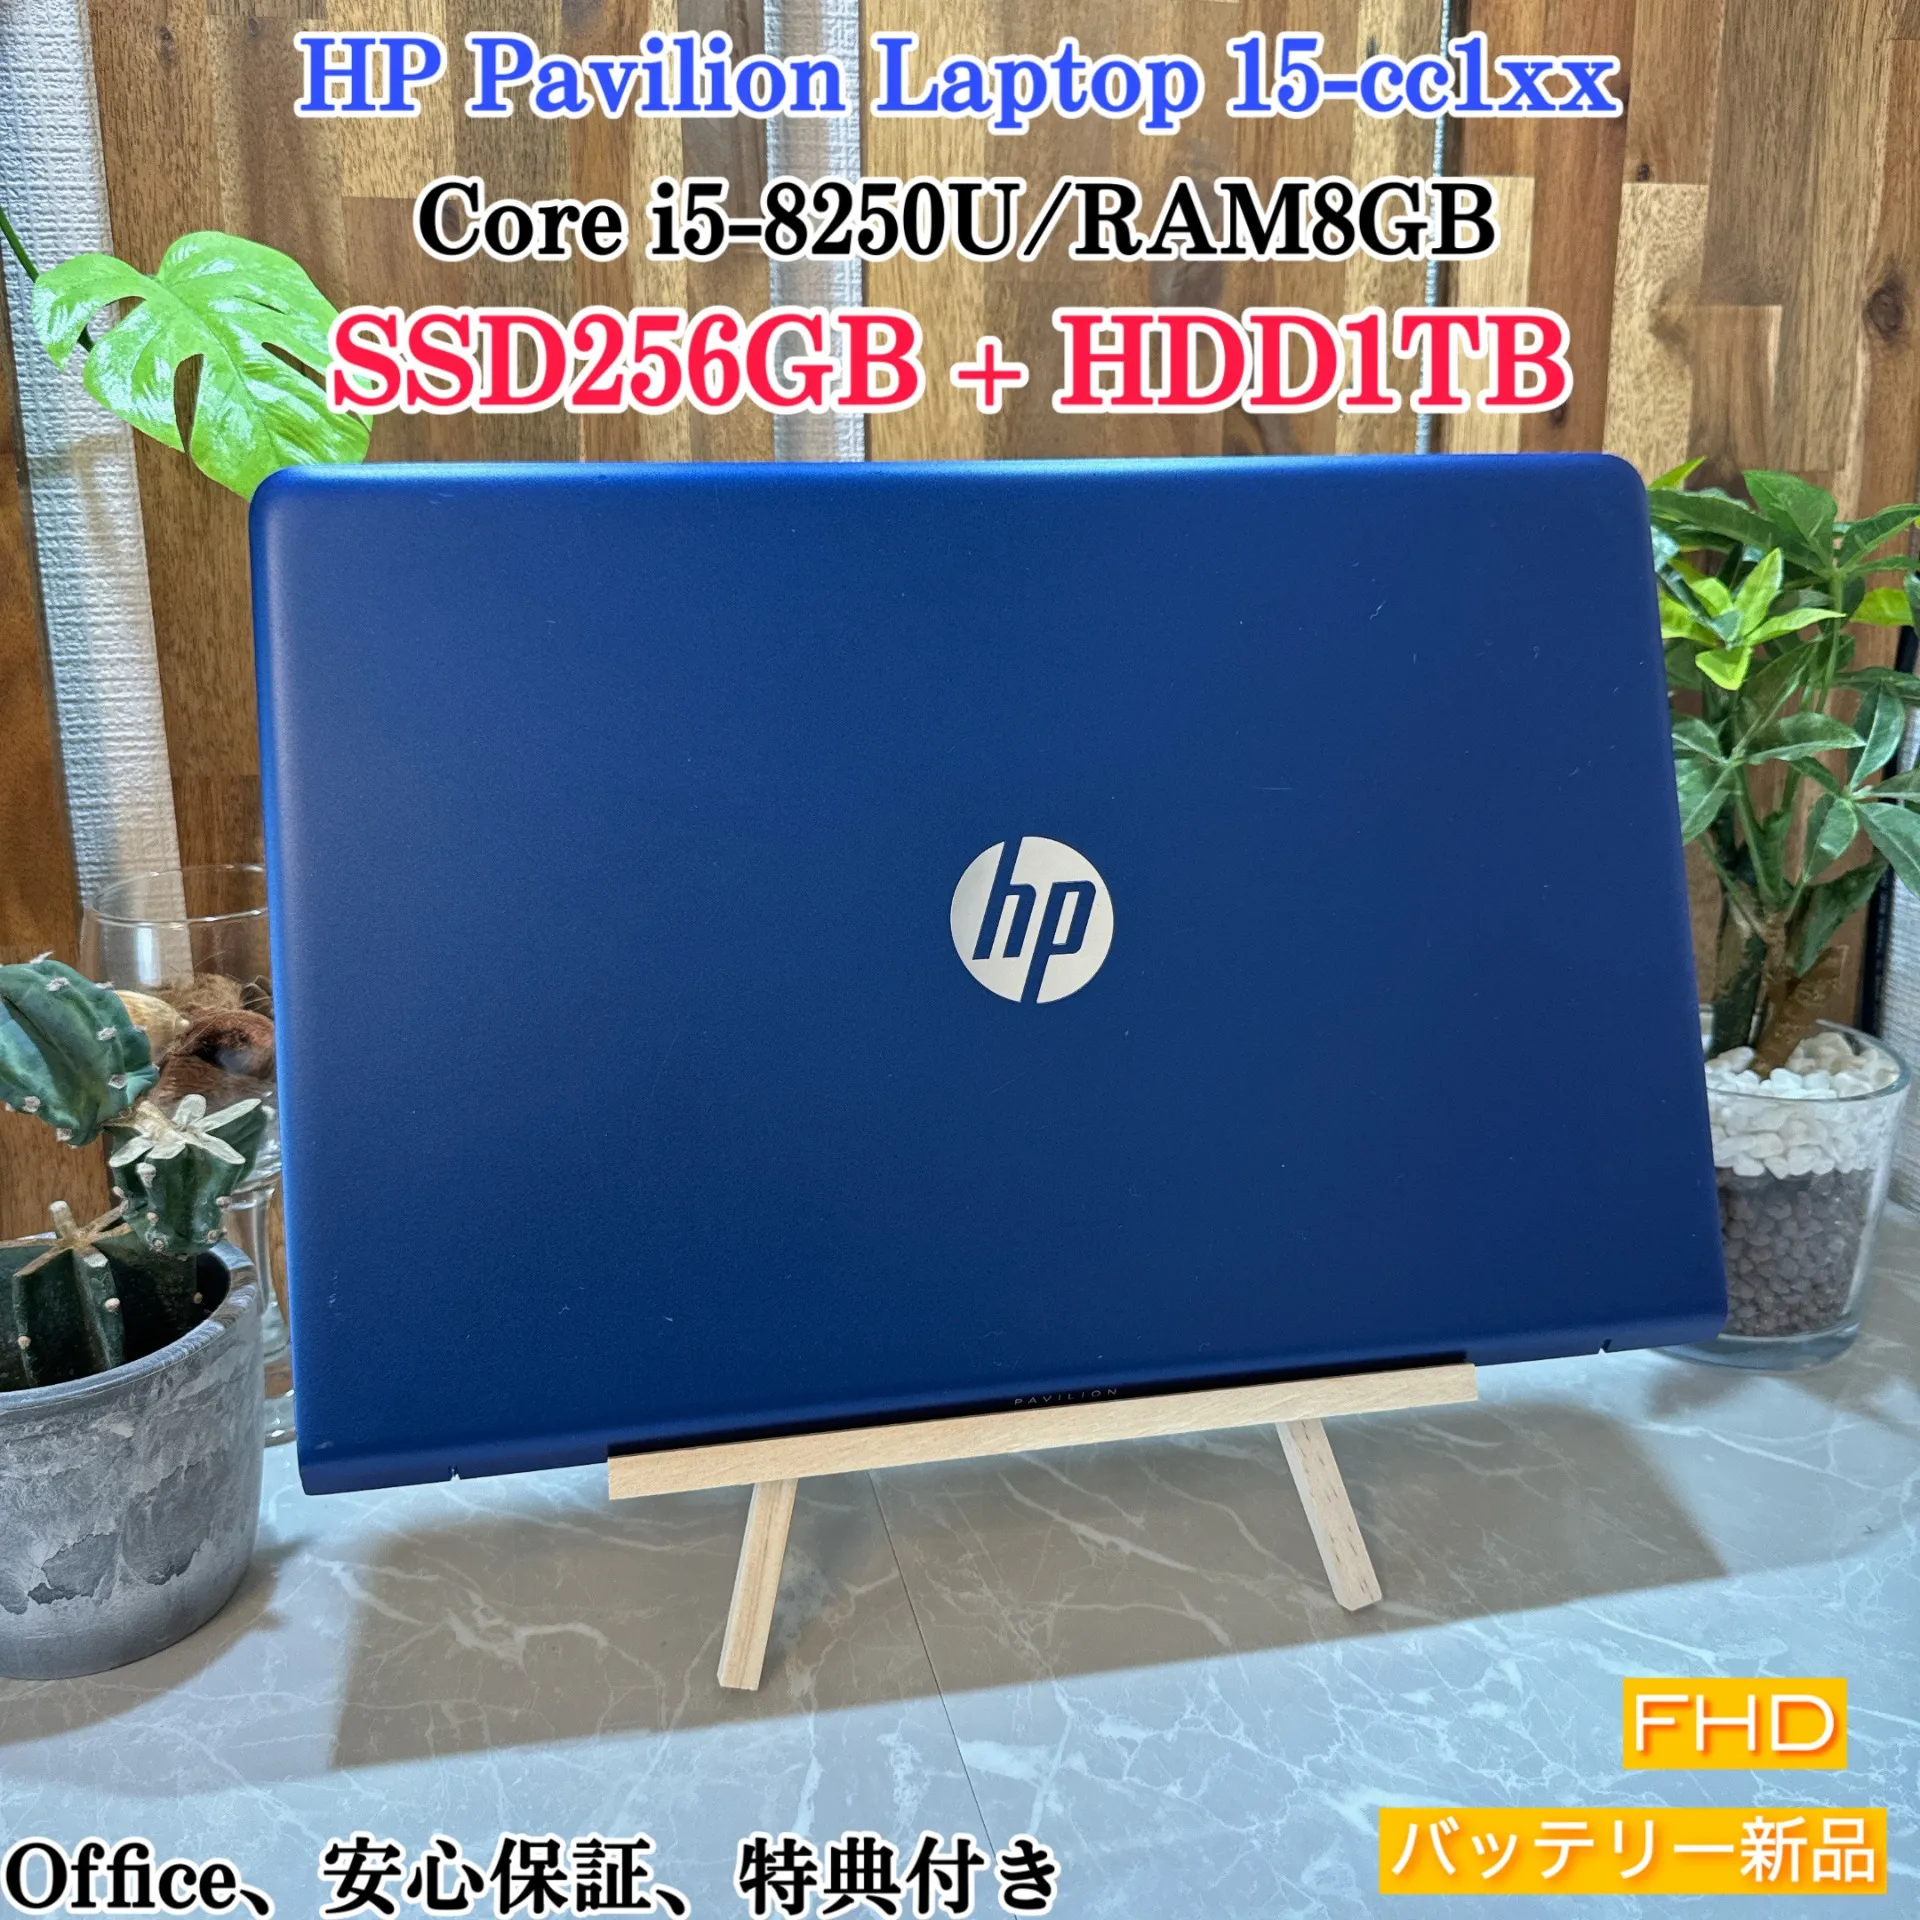 HP Pavilion Laptop☘️i5第8世代☘️SSD256G+HDD1TB【VKHRC2404127】